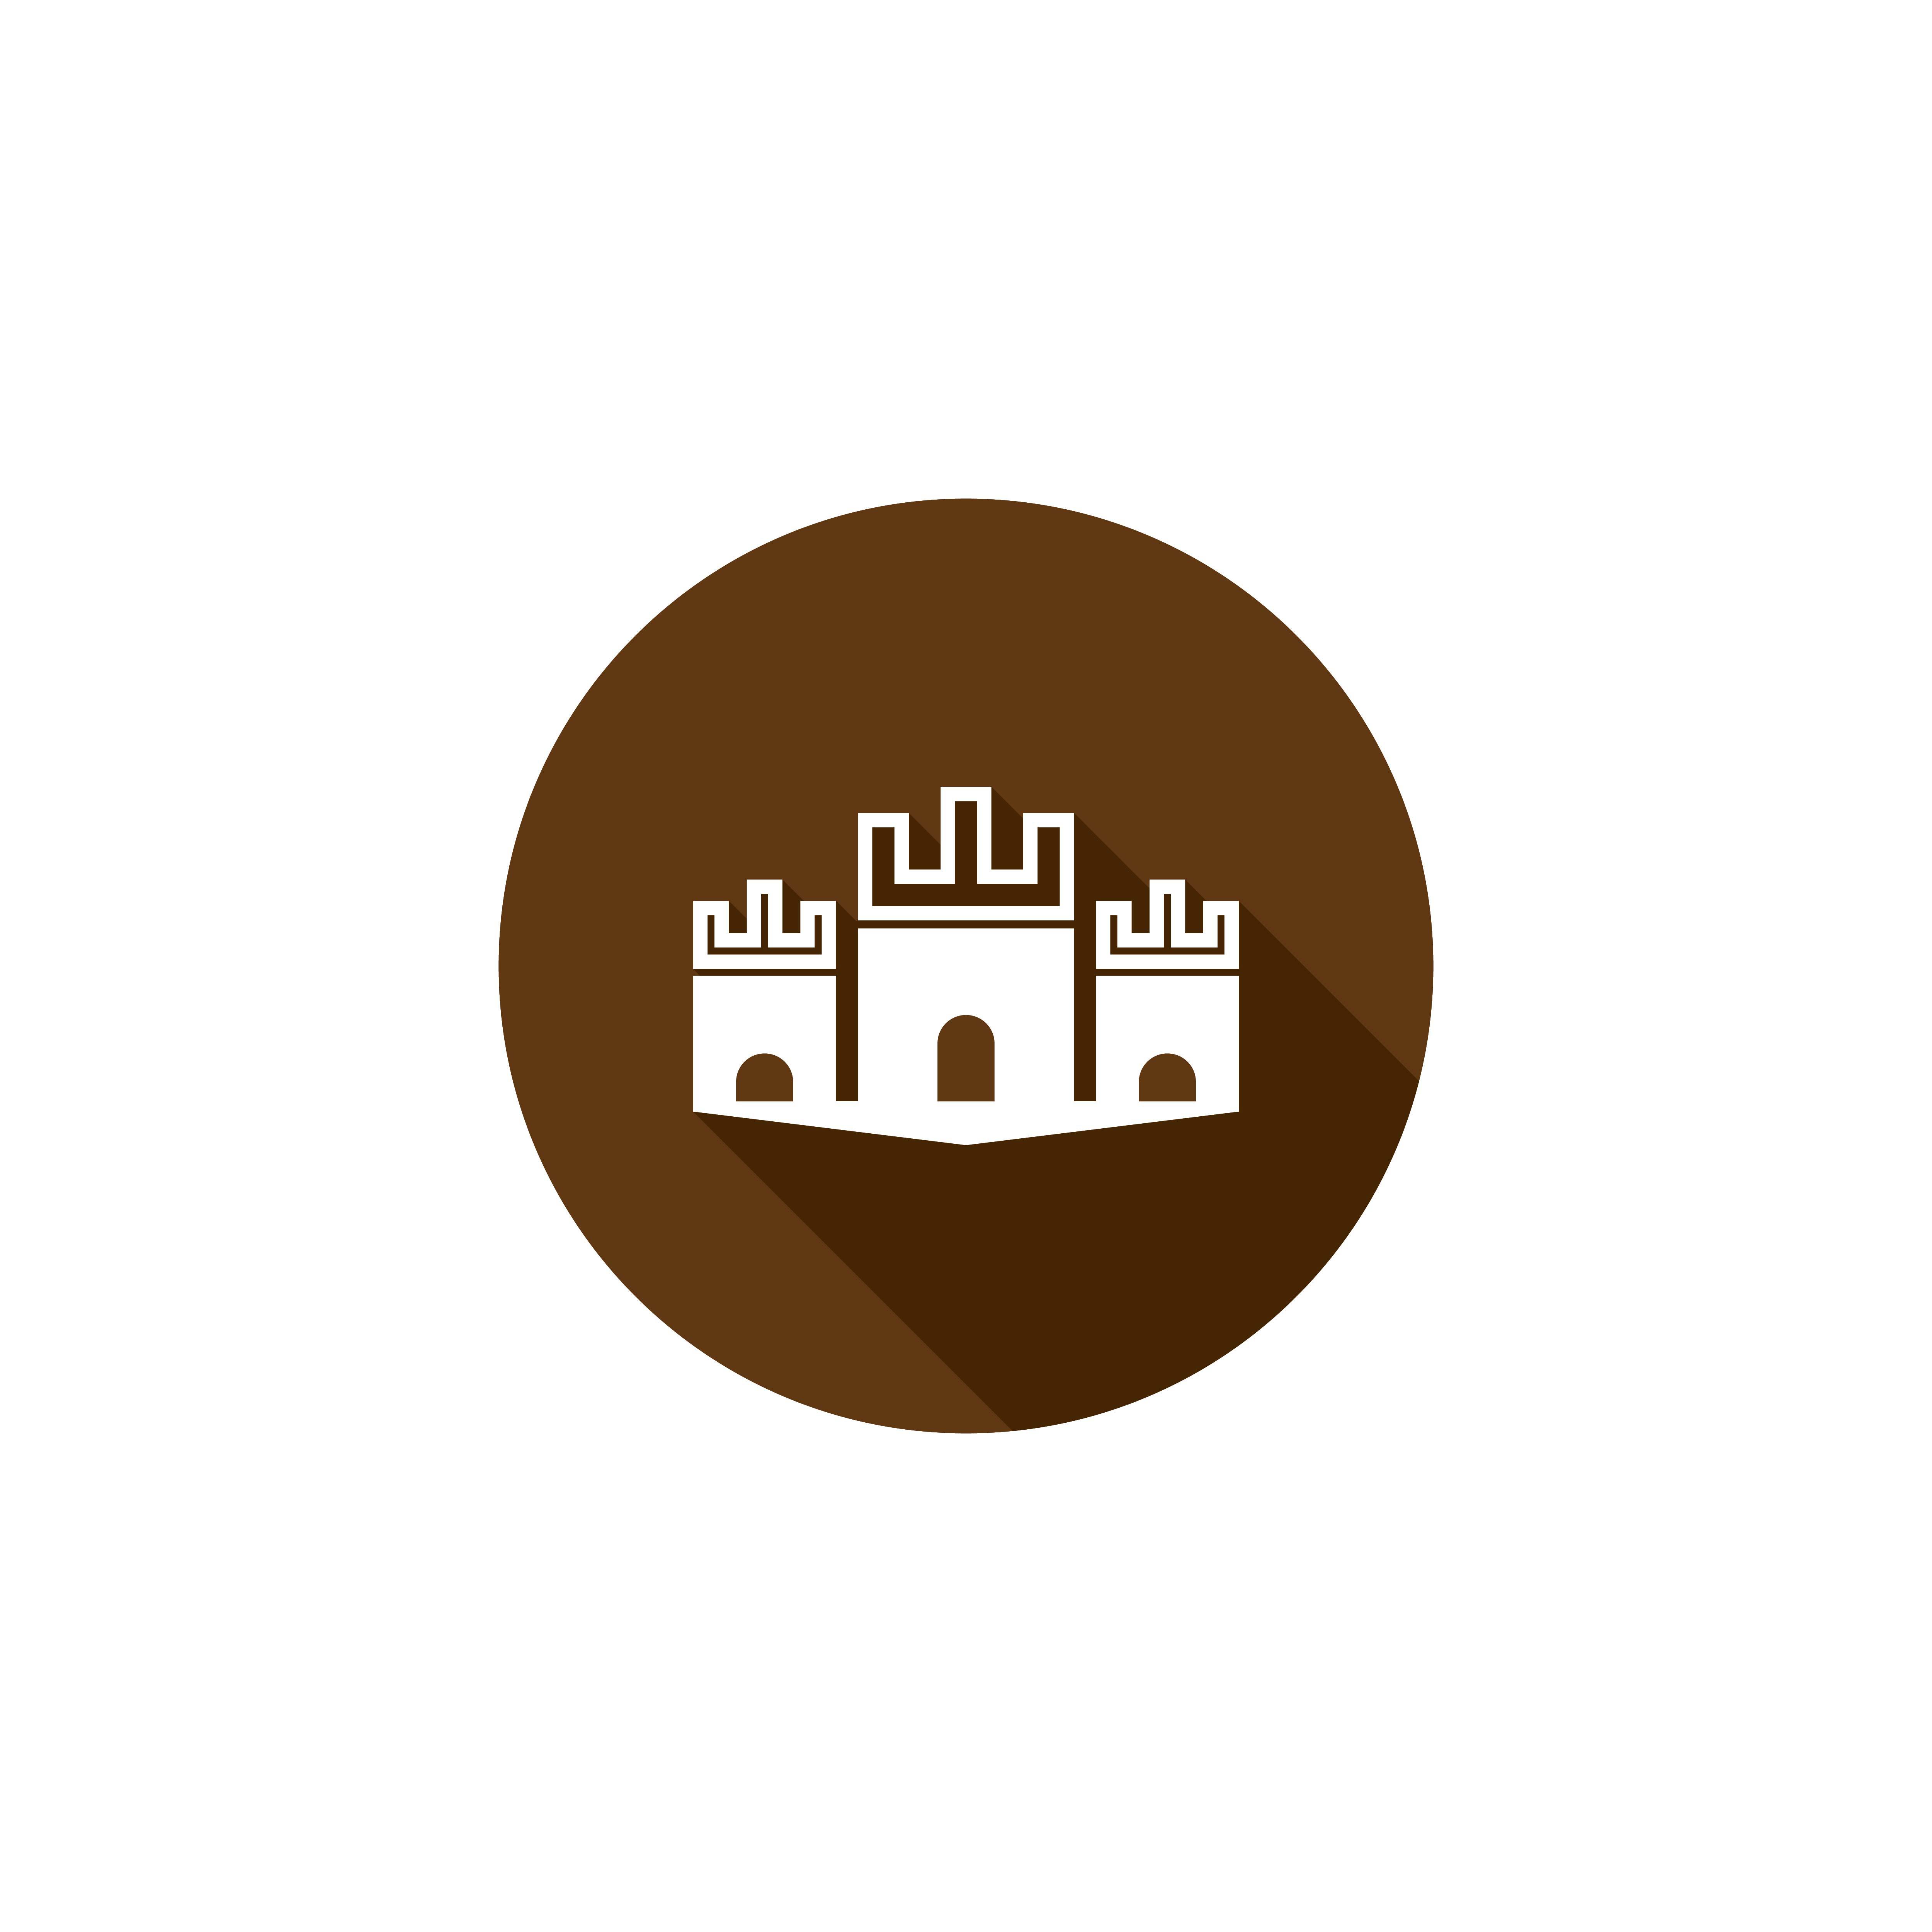 Castle logo template vector icon design